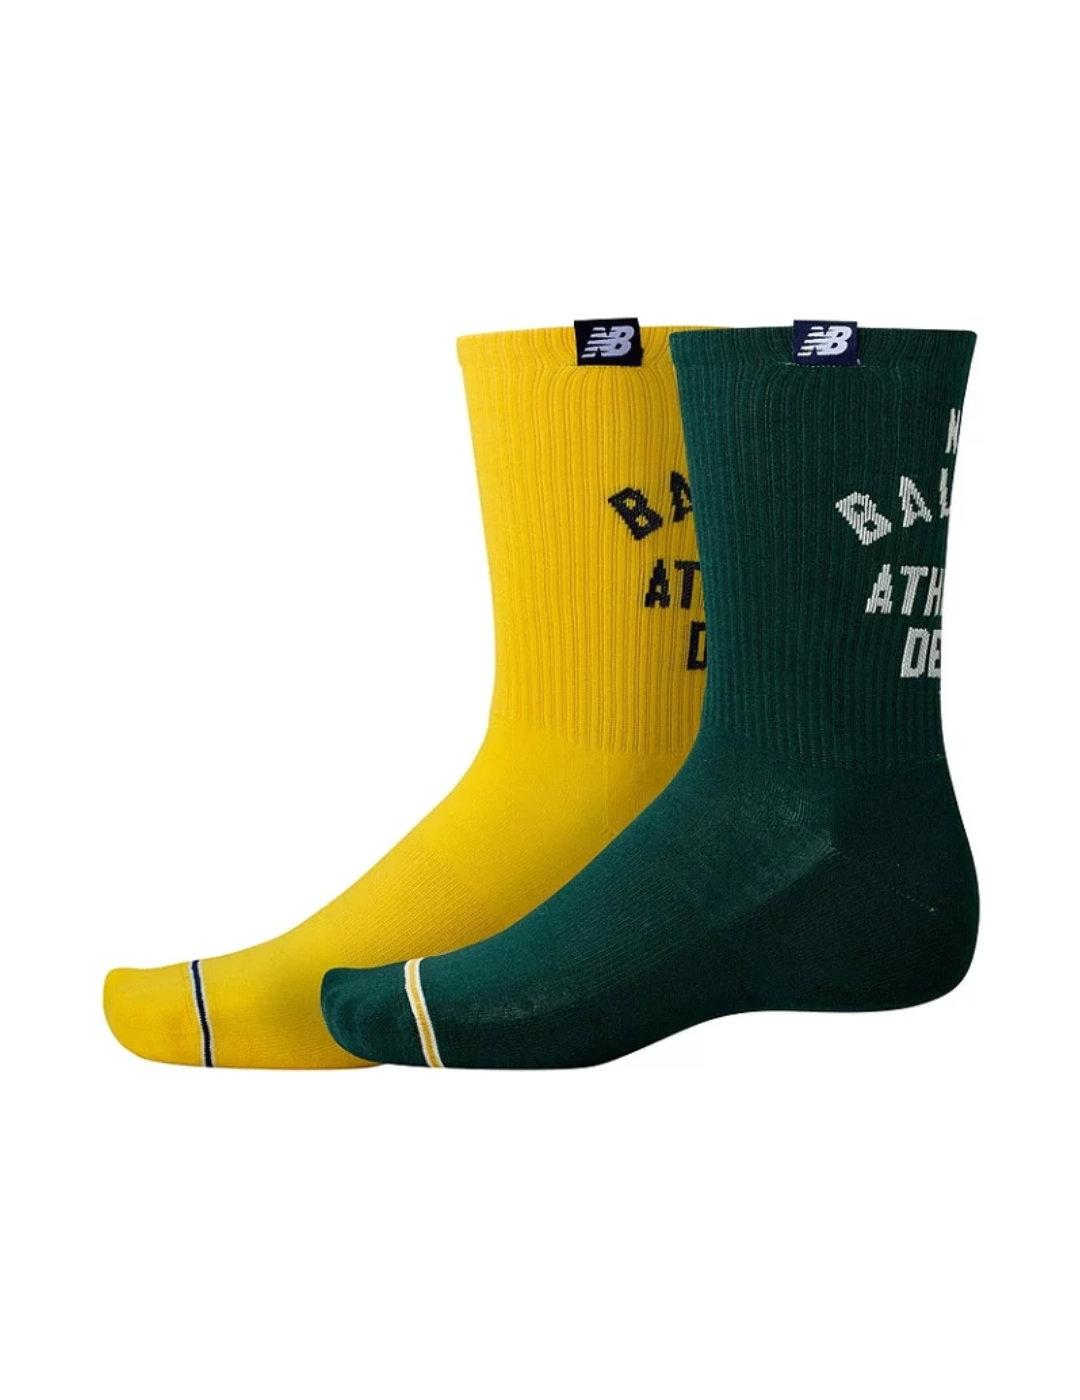 Calcetines New Balance Essential pack2 verde/amarillo unisex